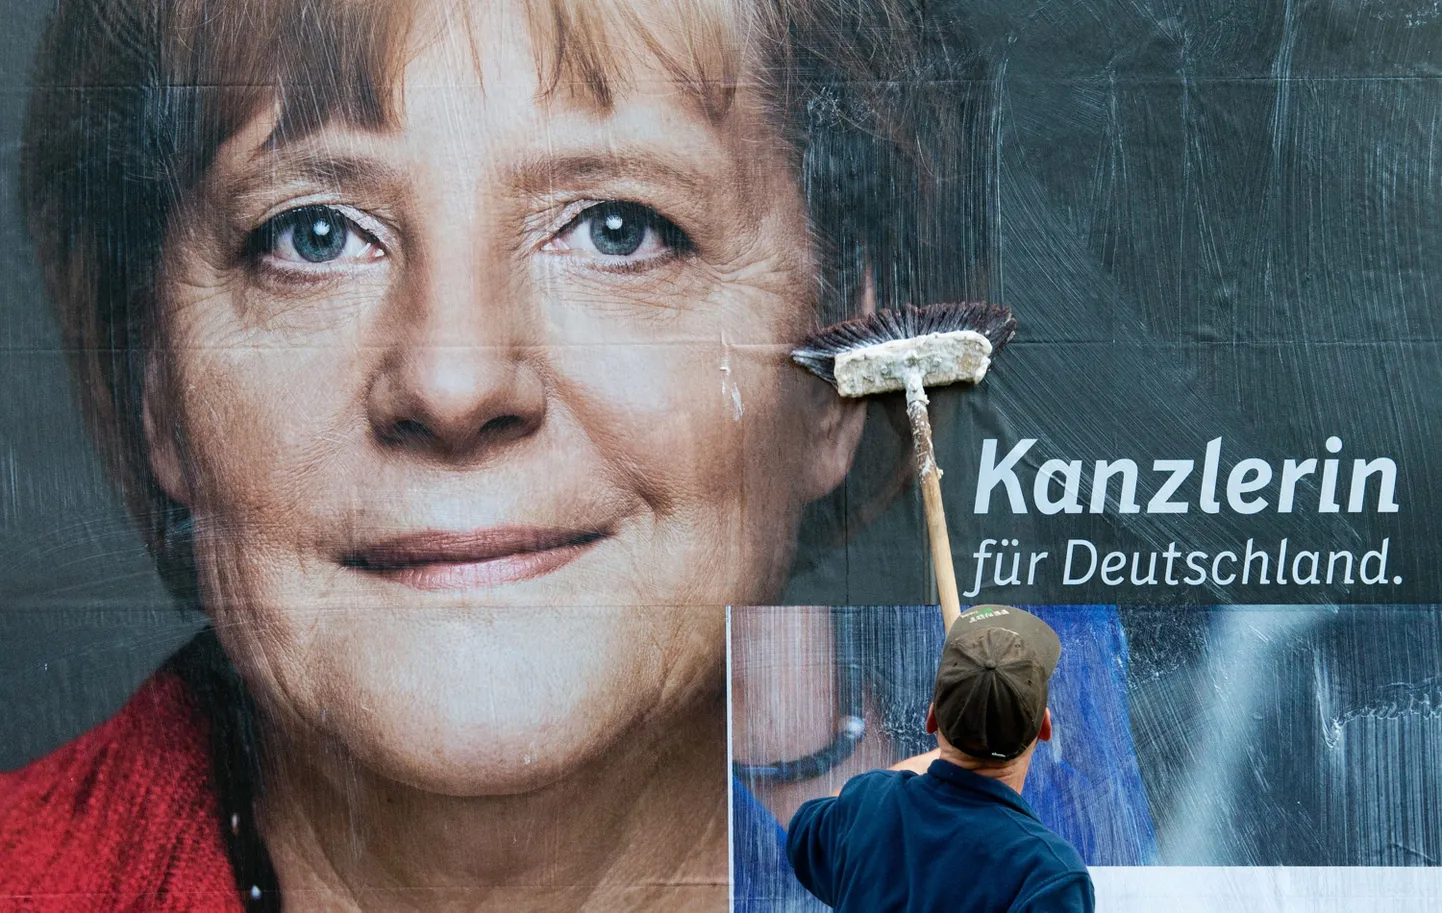 Kantsler Angela Merkeli vastased peavad valitsusjuhi valimisplakateid sisutühjaks.